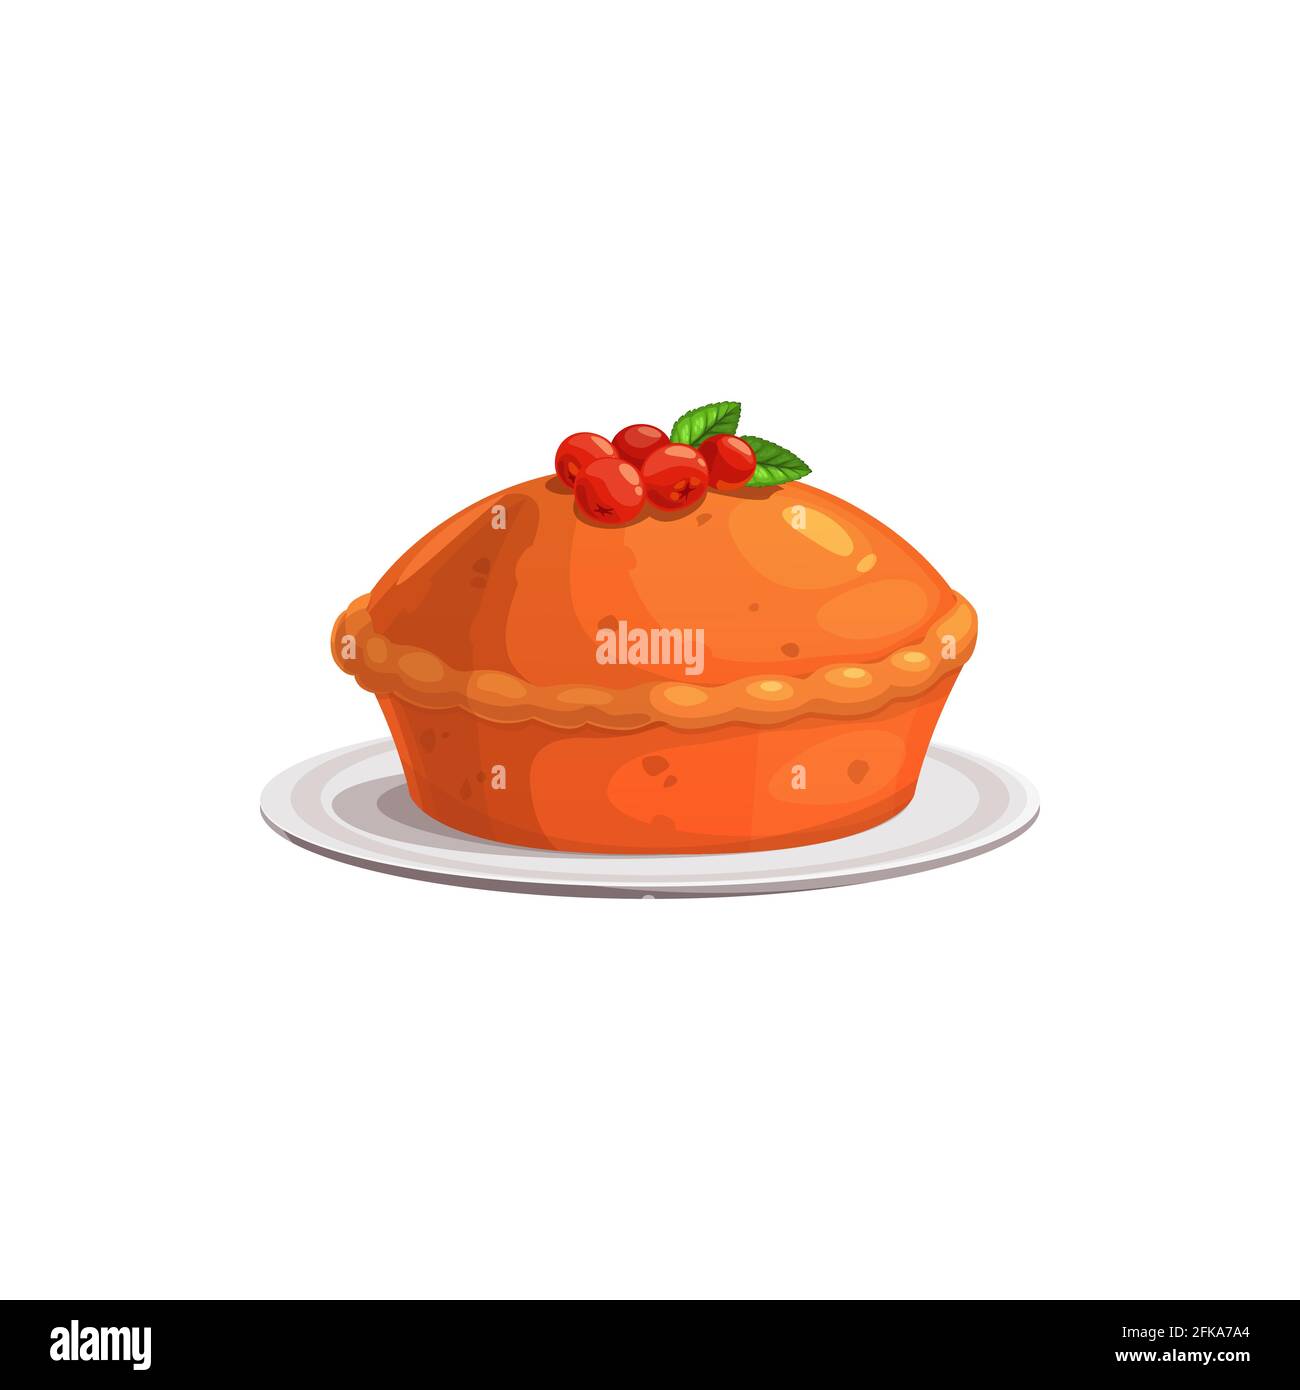 Torte mit Cranberry-Vektor-Symbol isoliert auf weißem Hintergrund. Gebackene Kuchen Cartoon-Element für Design. Traditionelle Bäckerei zum Erntedankfest Stock Vektor